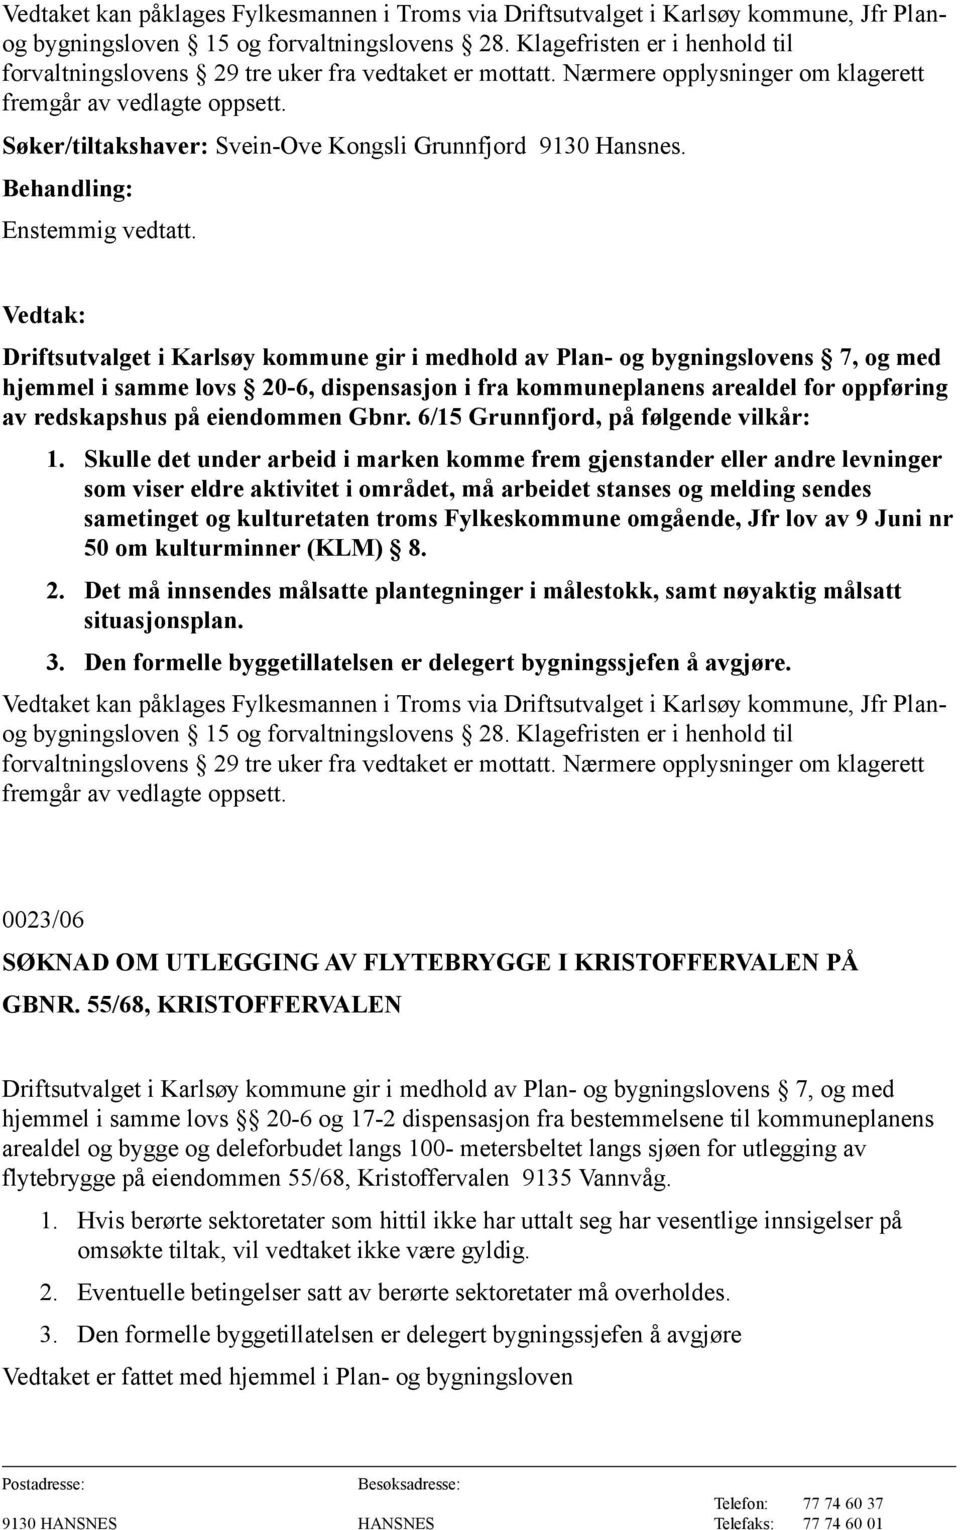 Driftsutvalget i Karlsøy kommune gir i medhold av Plan- og bygningslovens 7, og med hjemmel i samme lovs 20-6, dispensasjon i fra kommuneplanens arealdel for oppføring av redskapshus på eiendommen